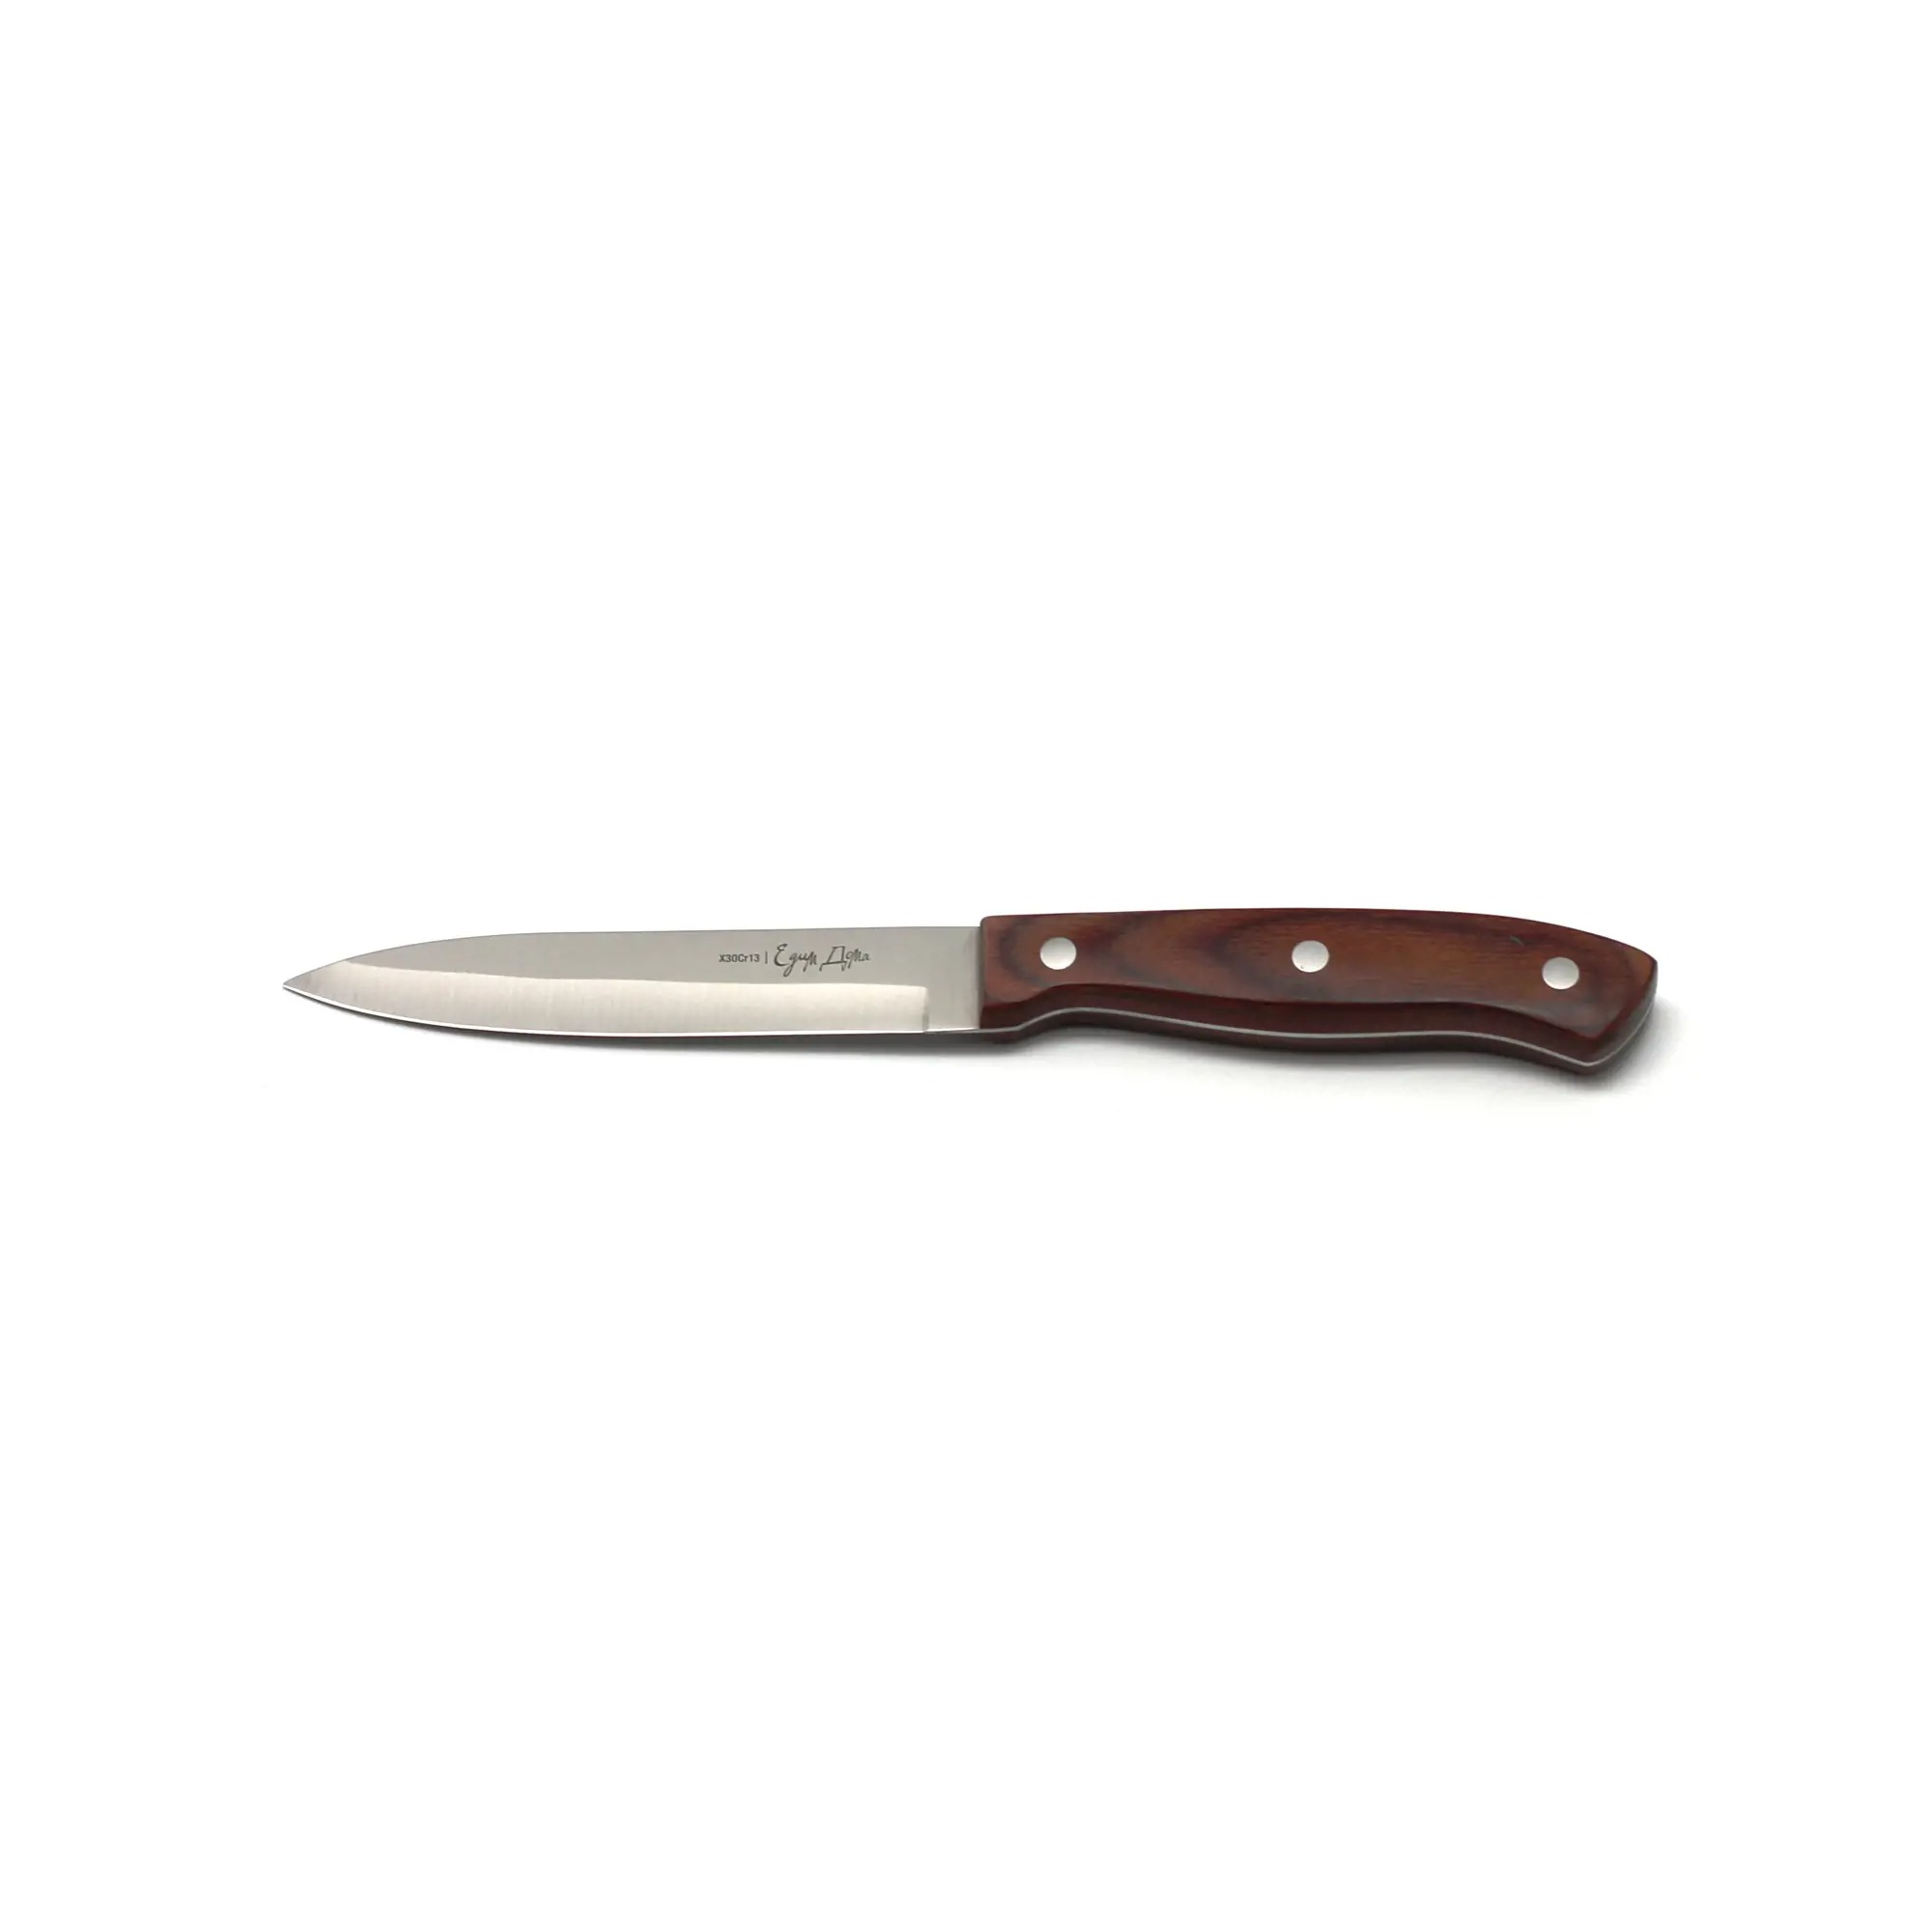 Нож универсальный Едим дома кухонный 12см листовой (ED-408) нож обвалочный едим дома 15см листовой